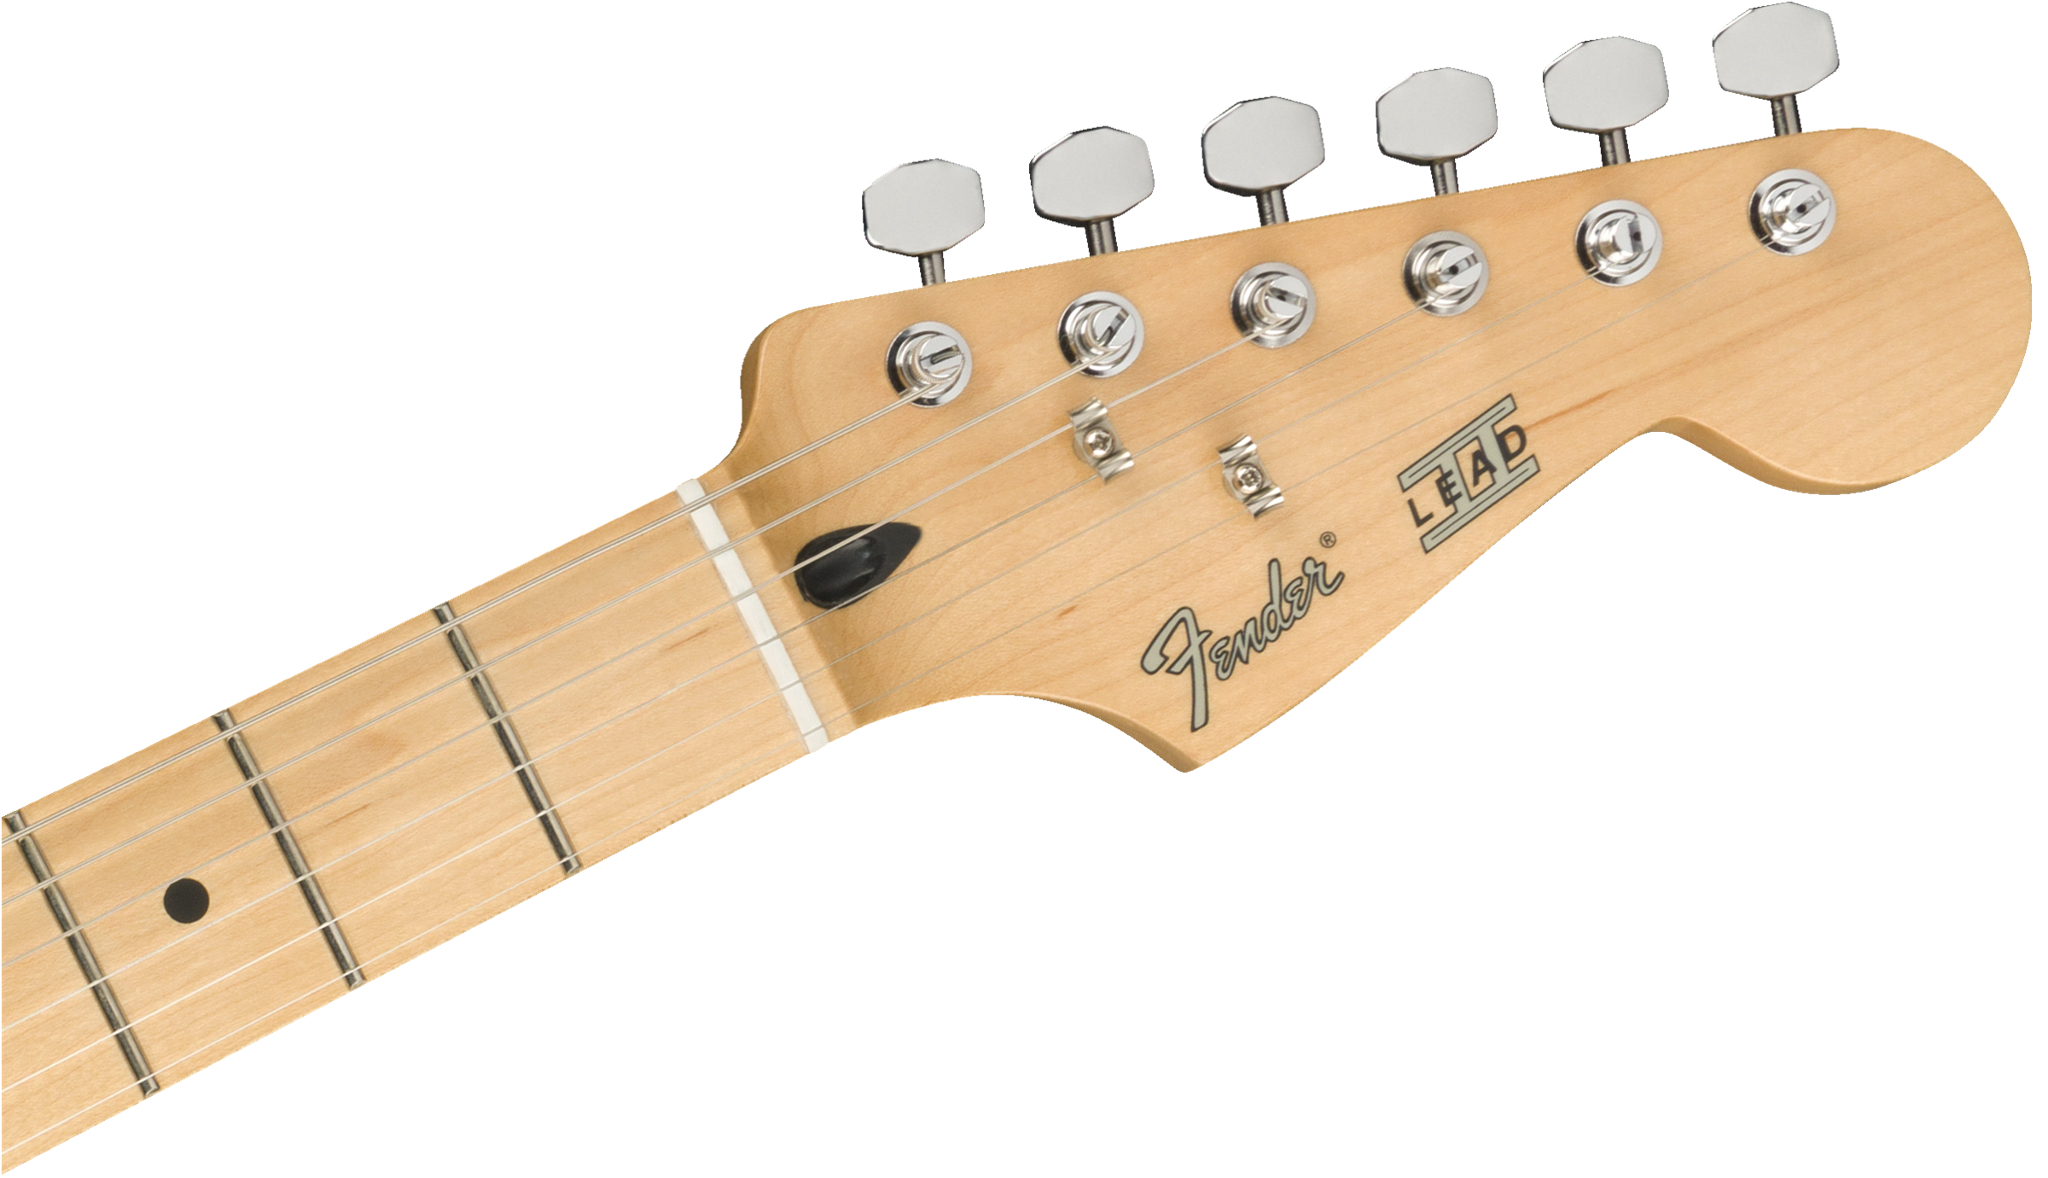 Fender Player Lead E-Gitarre II MN SS BLK